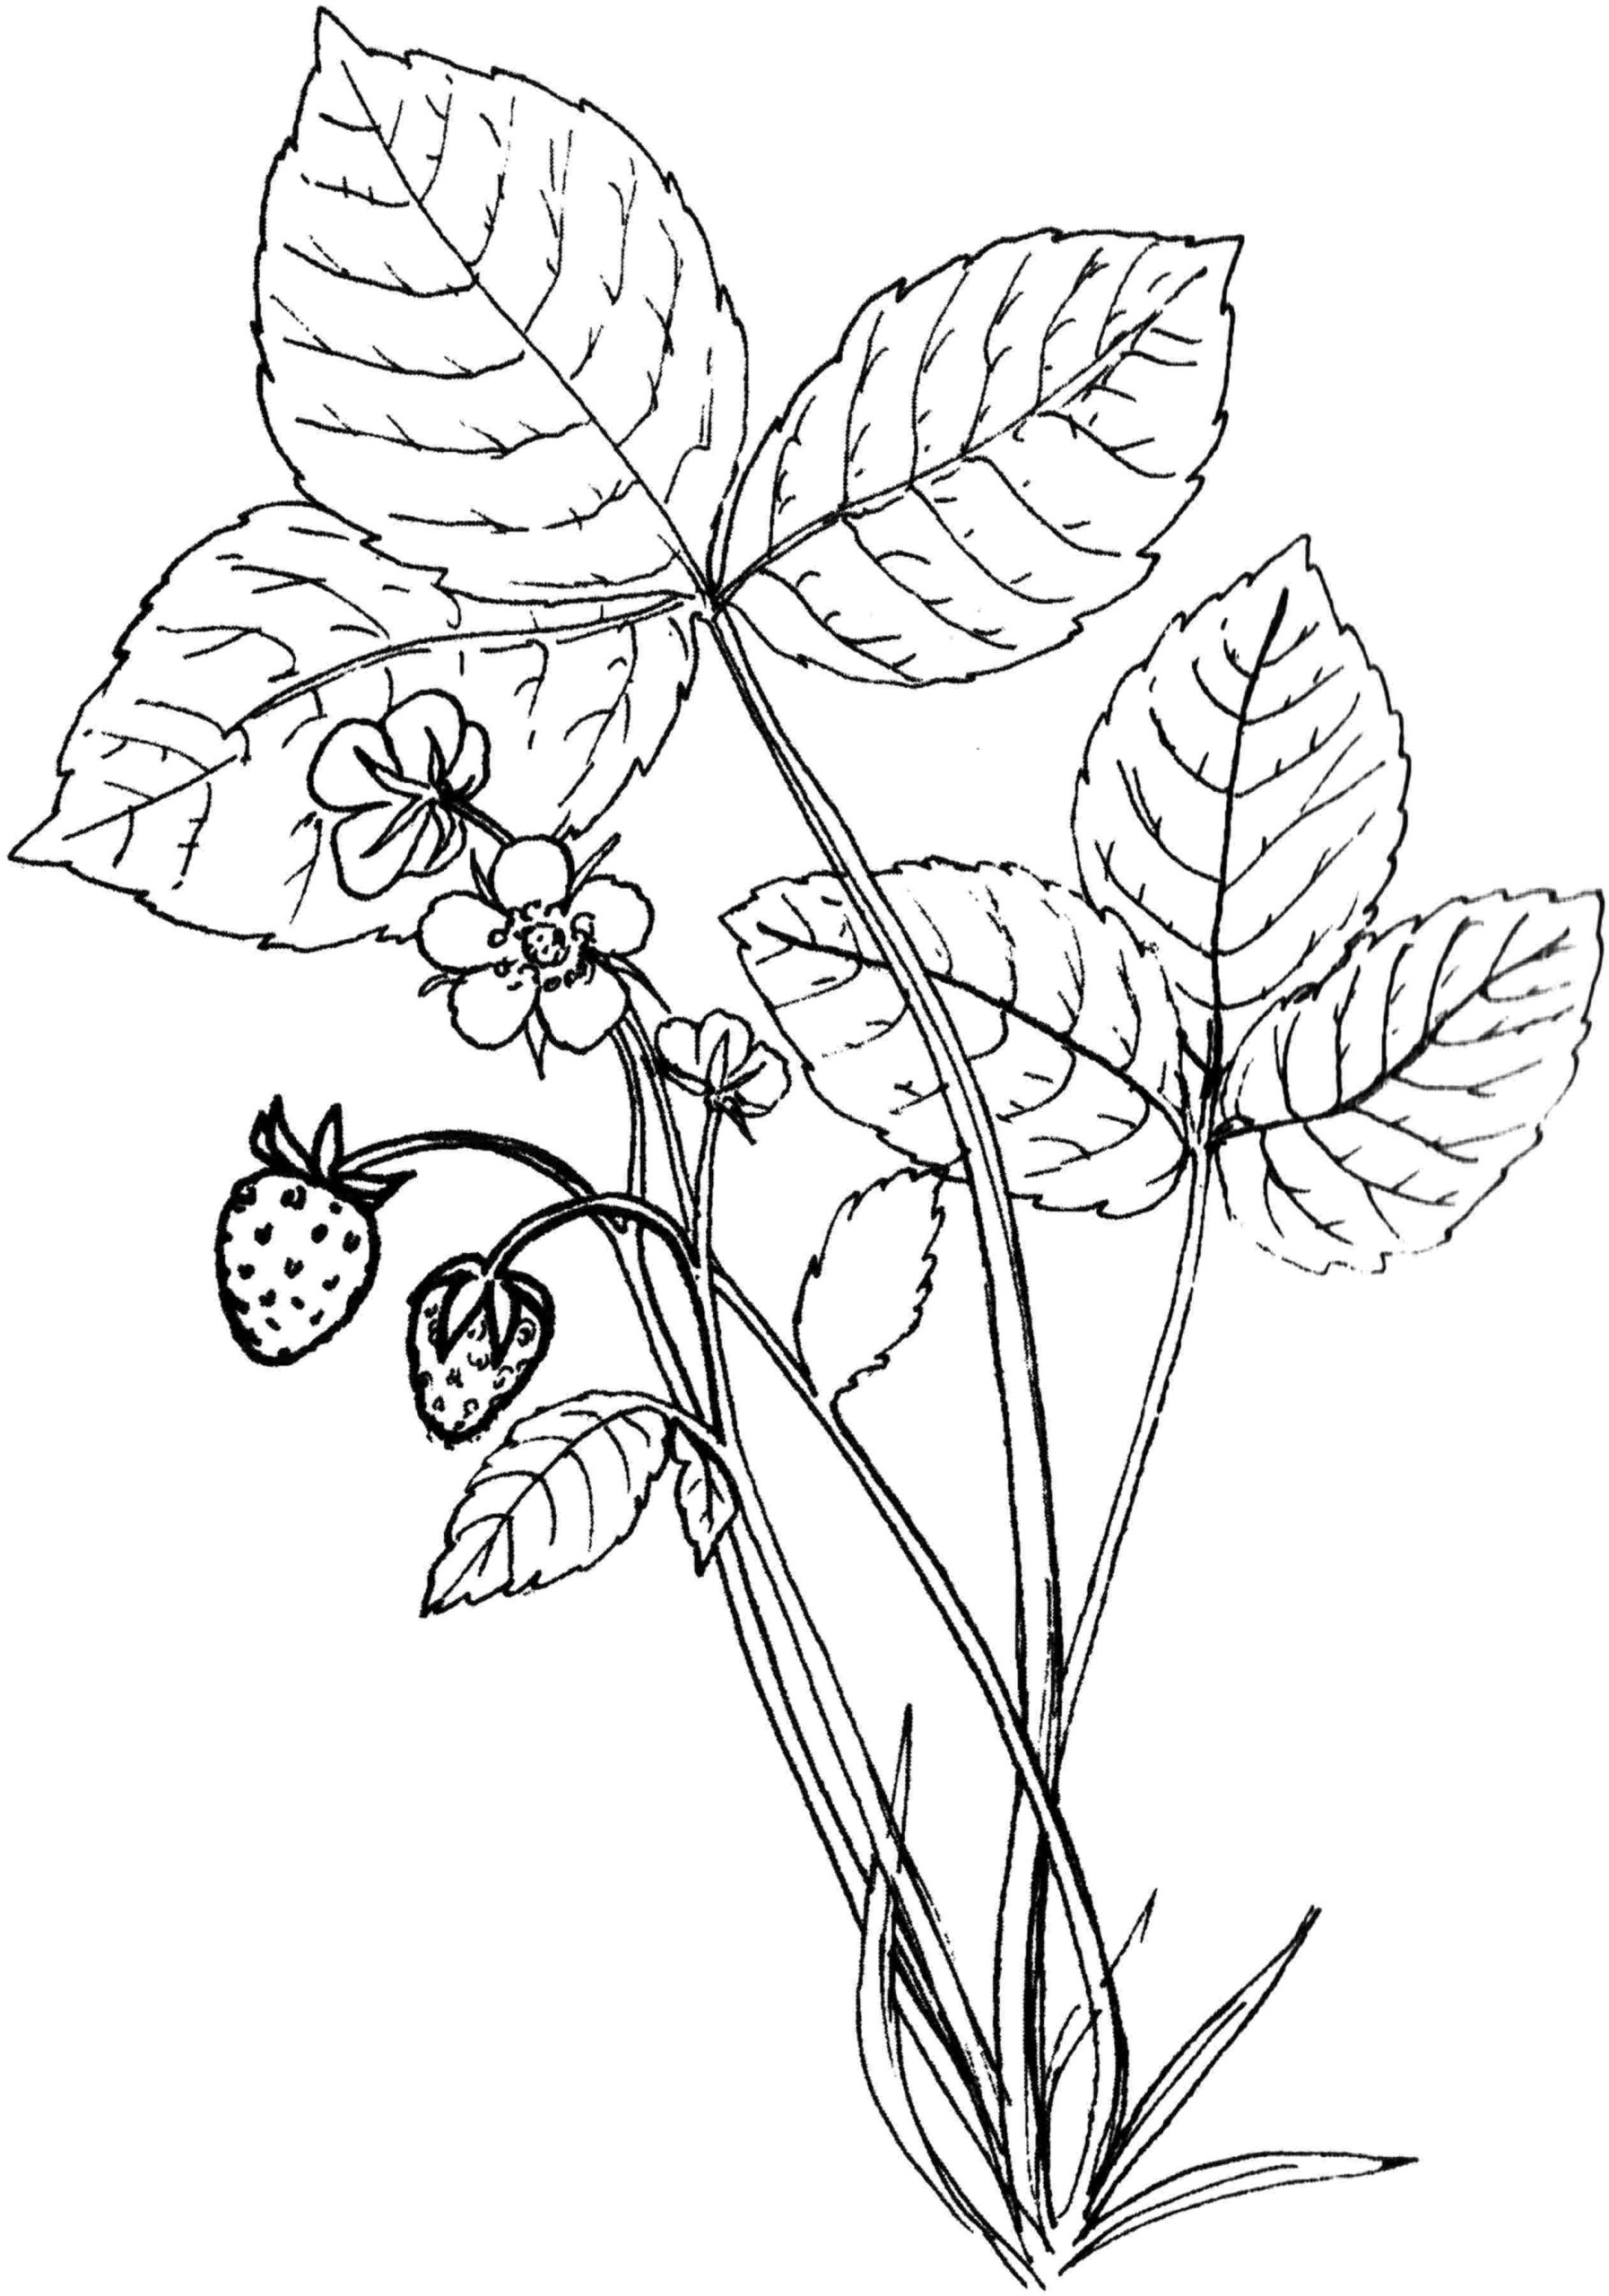 Графические зарисовки с натуры цветов трав насекомых